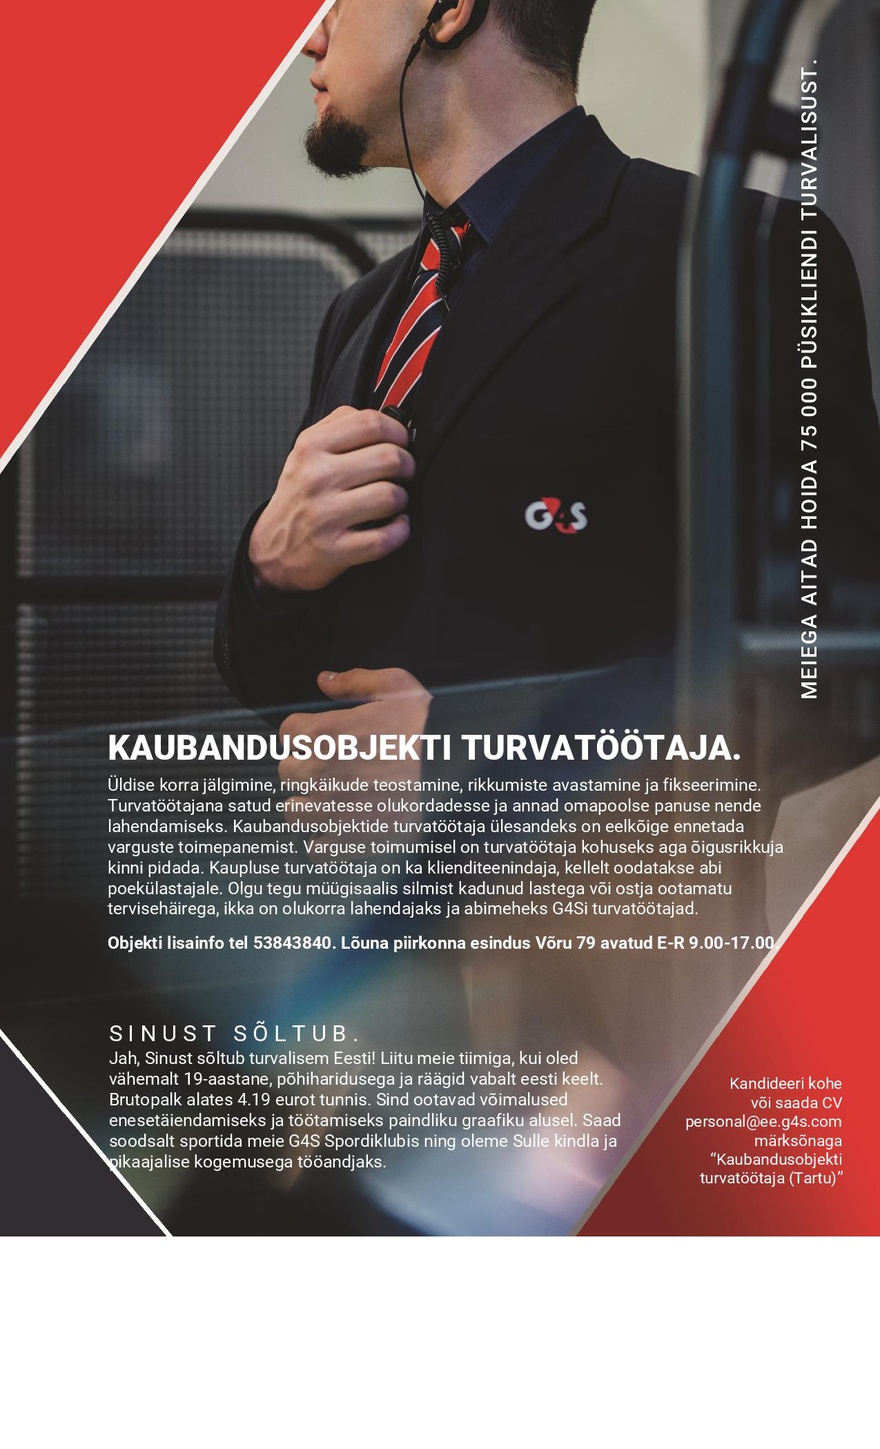 CVKeskus.ee klient Kaubandusobjekti turvatöötaja (Tartu)